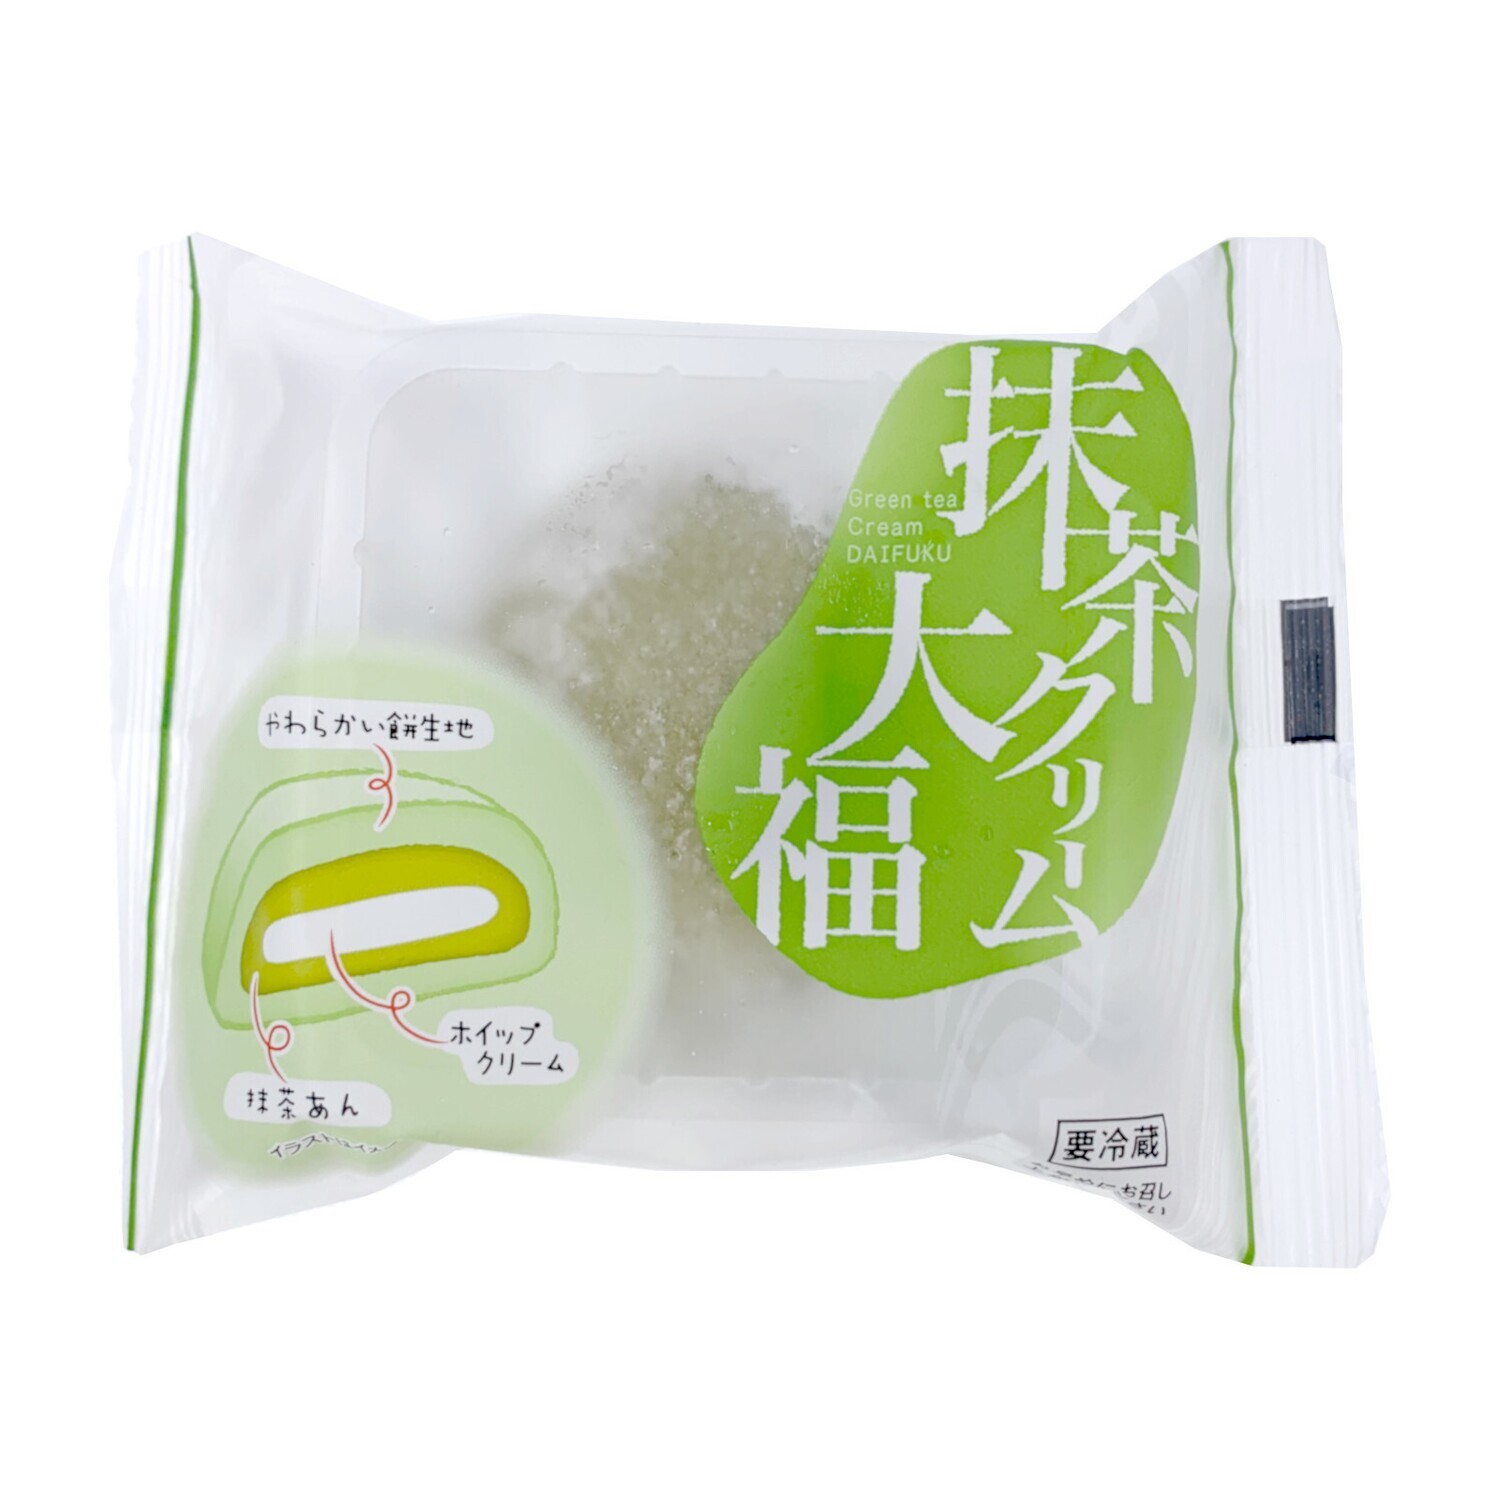 Minato Matcha Cream Mochi (60G)